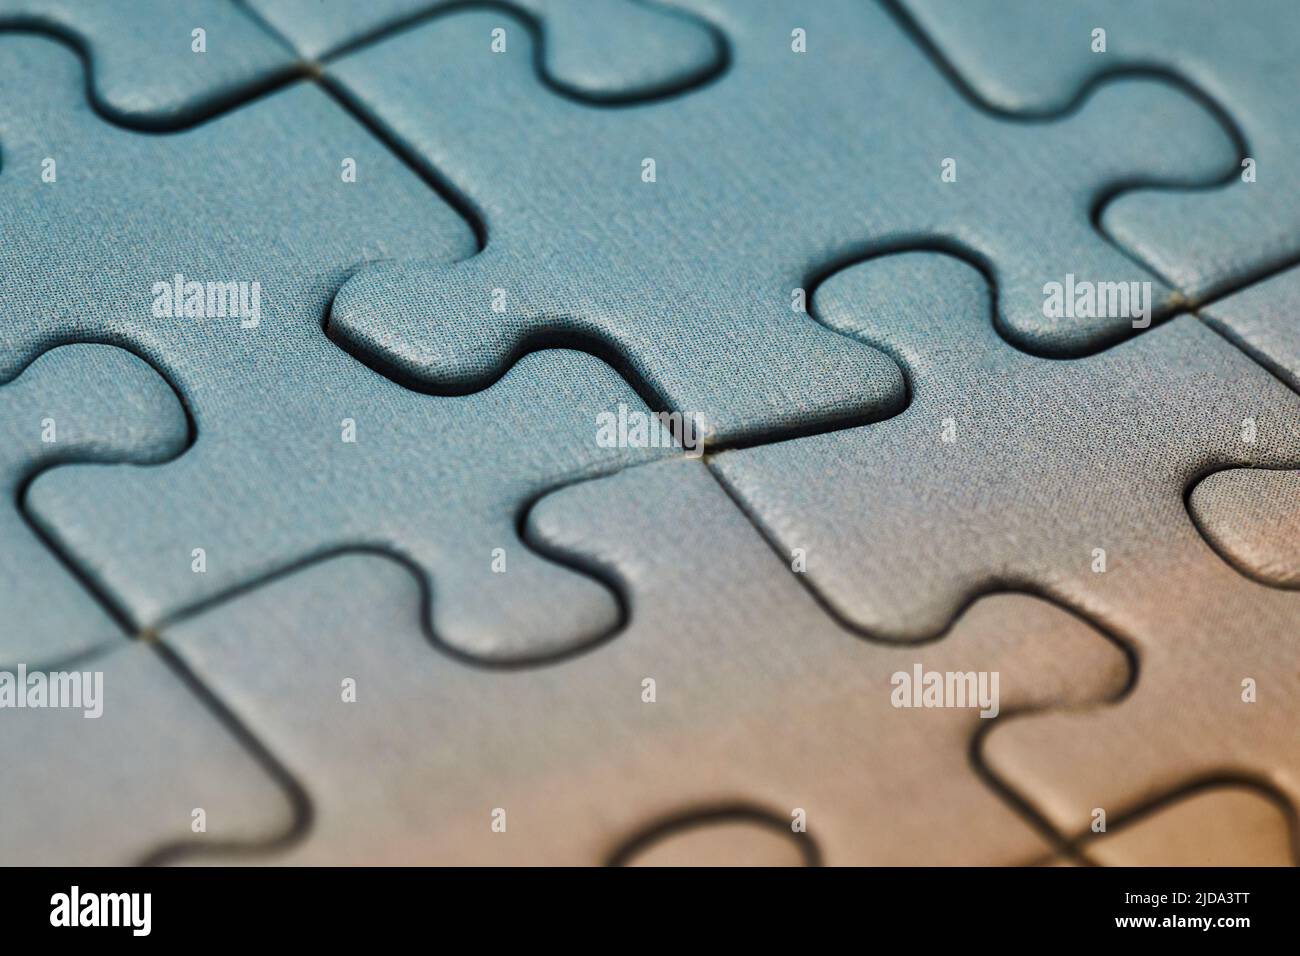 Jigsaw puzzle background Stock Photo